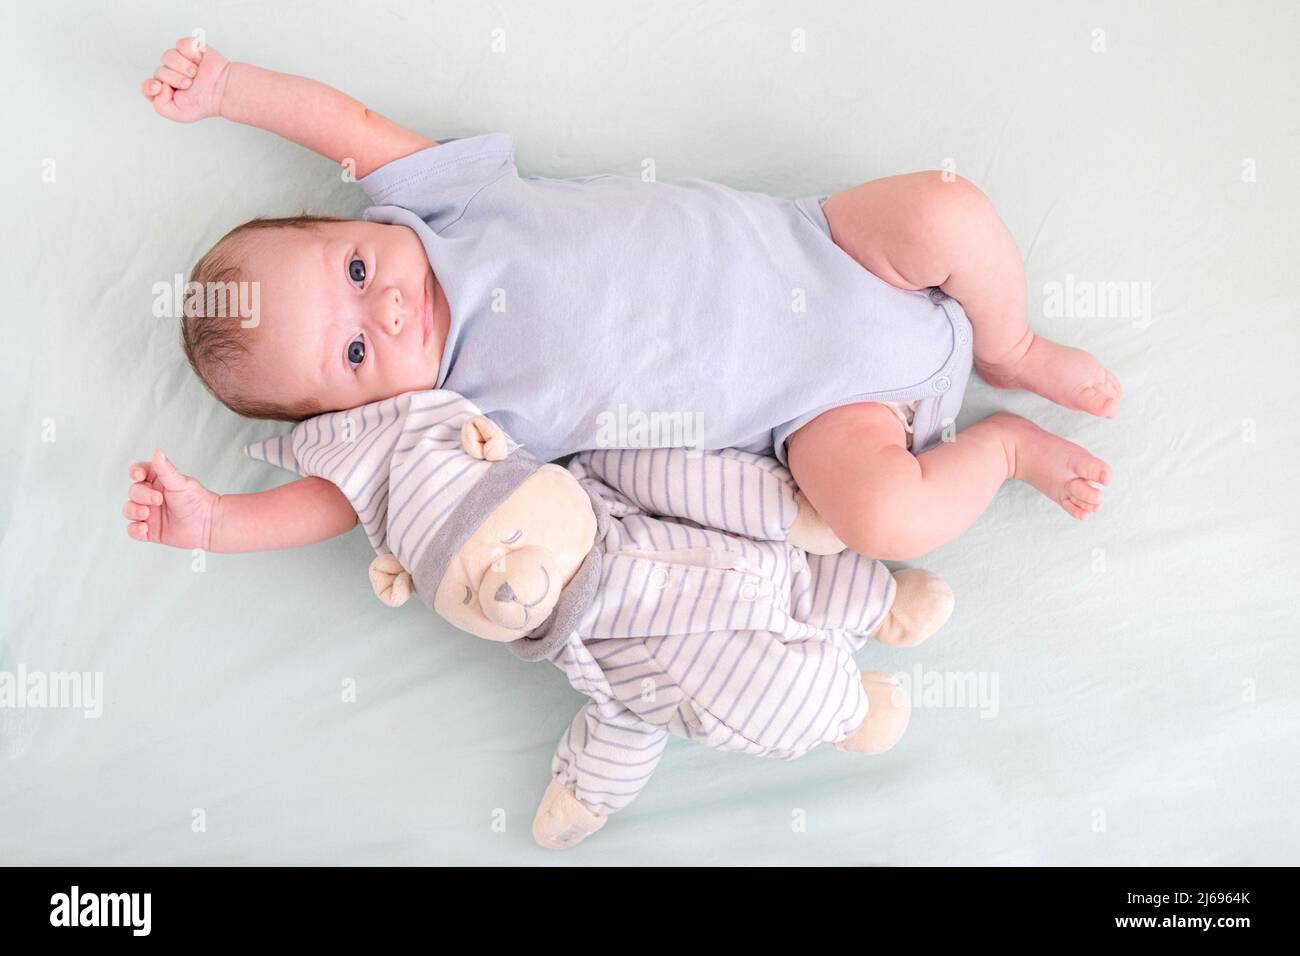 Neugeborener Junge 3 Monate alt liegt in Krippe Kinderkrippe mit blauer Kleidung auf dem Rücken mit Teddybär, schaut auf die Kamera, Baby-Produkte-Konzept, Mock up. Stockfoto